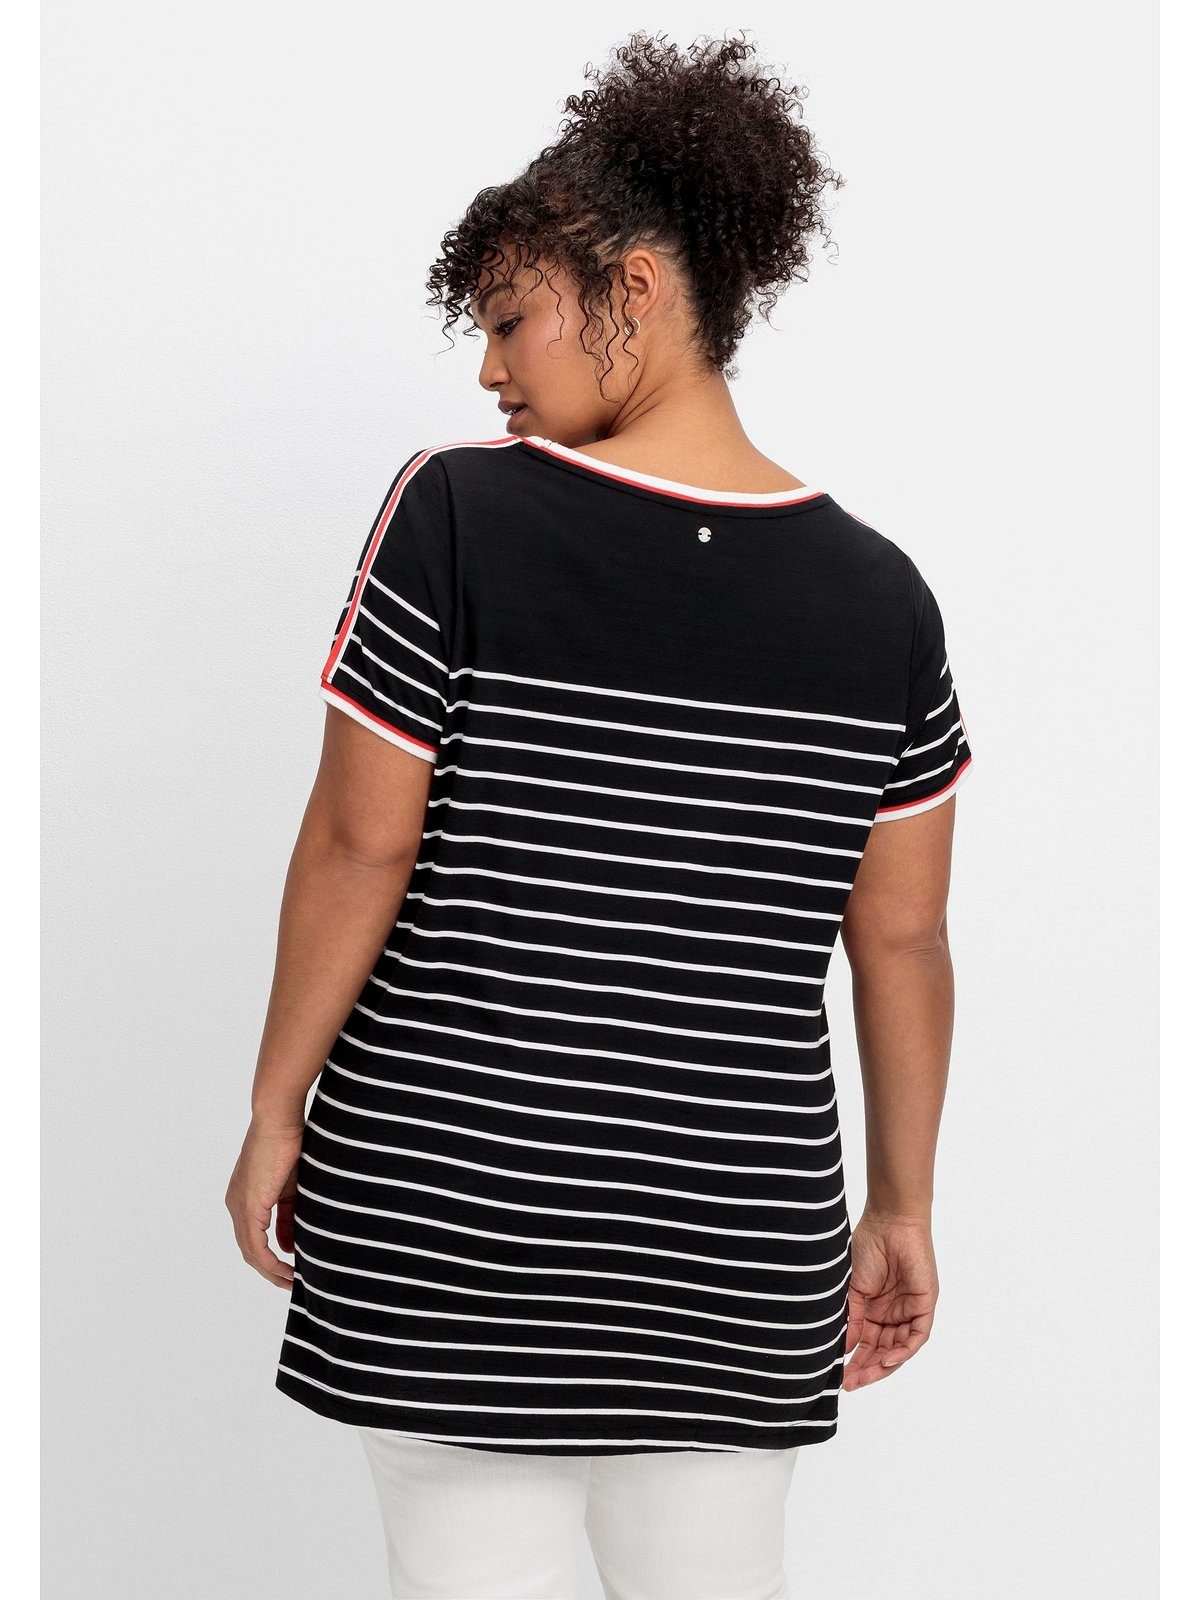 Sheego T-Shirt Große Größen mit Schulter gemustert der Zierband auf schwarz